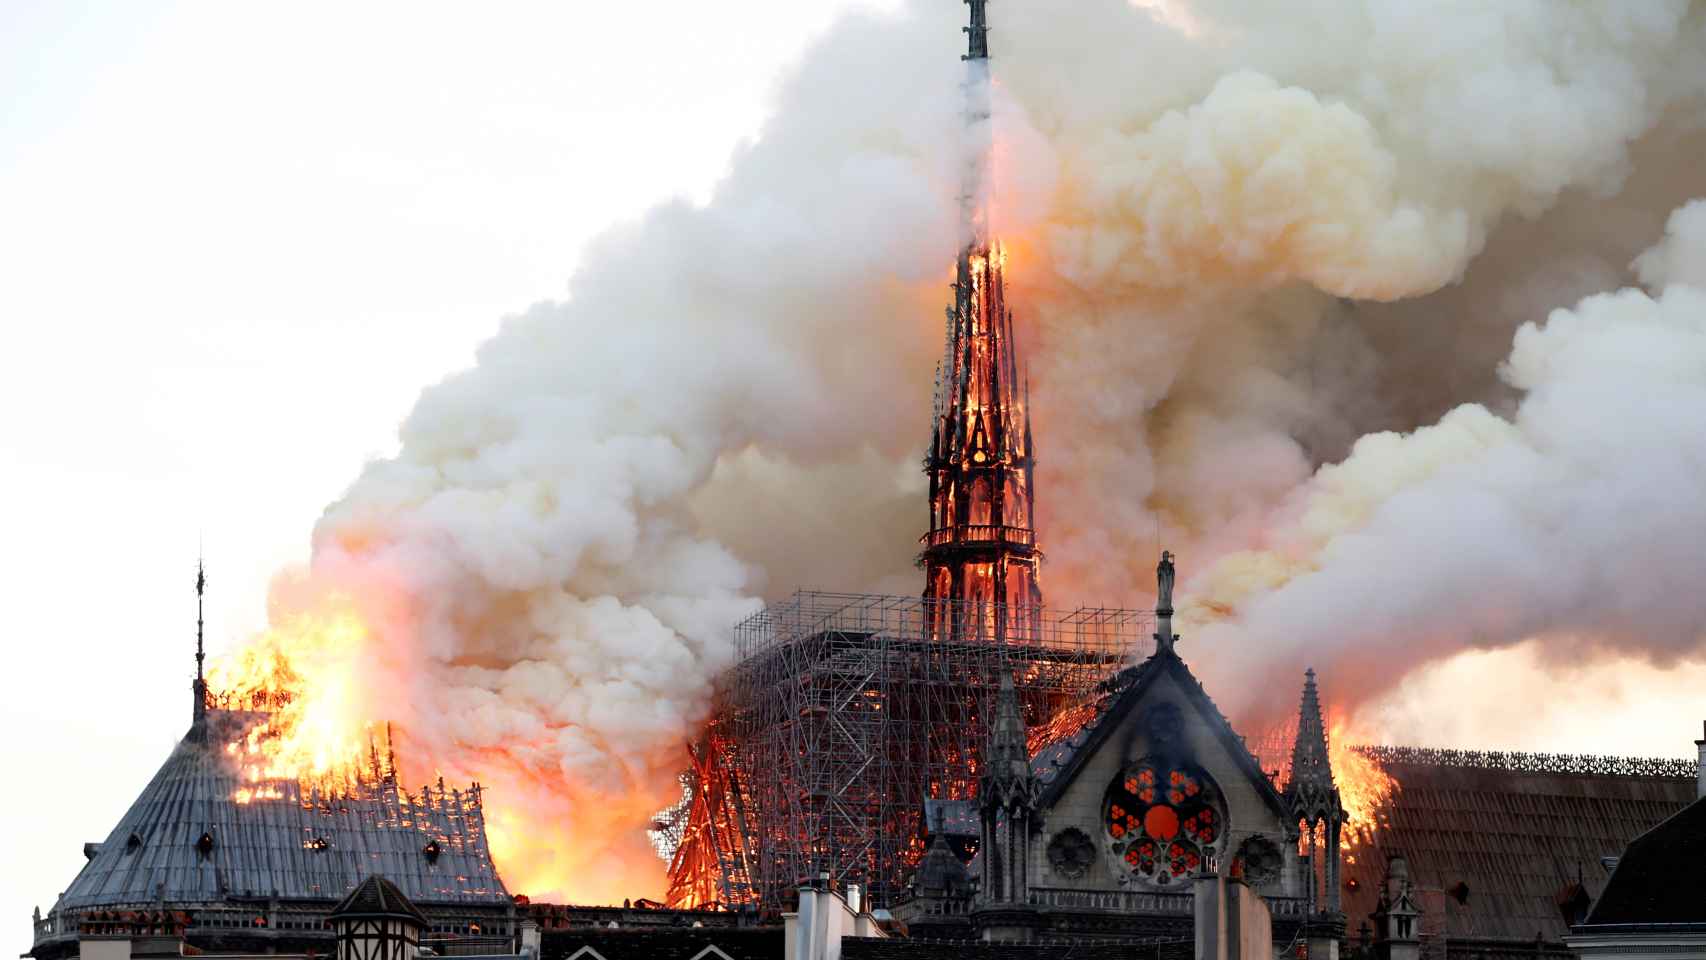 La aguja de Notre Dame, en llamas durante el incendio del pasado 15 de abril.